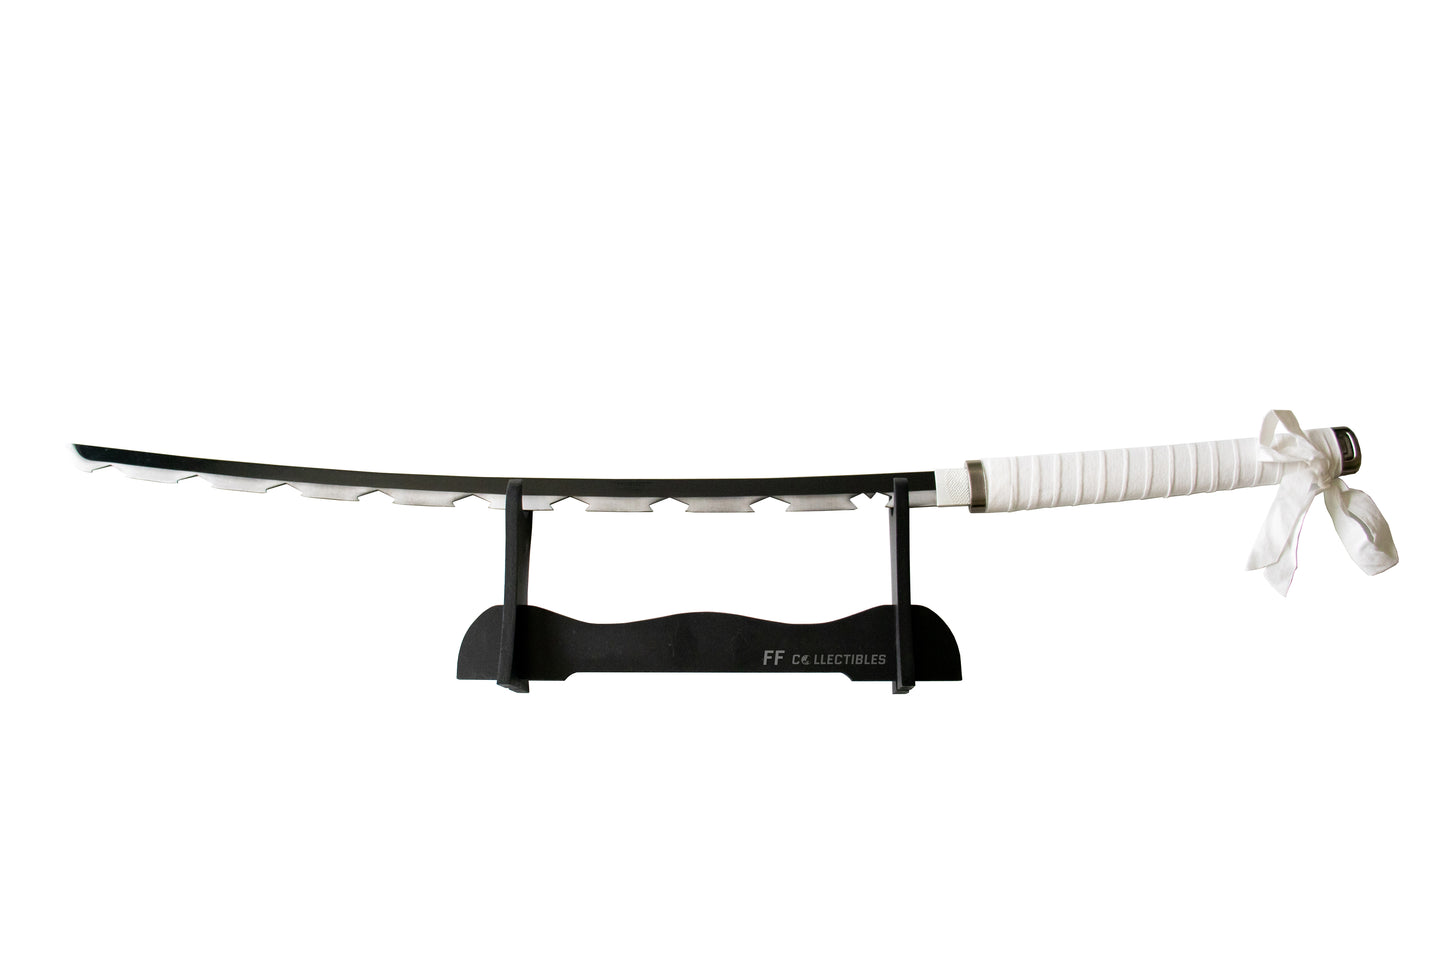 DEMON SLAYER - INOSUKE HASHIBIRA'S NICHIRIN SWORD (w FREE sword stand)